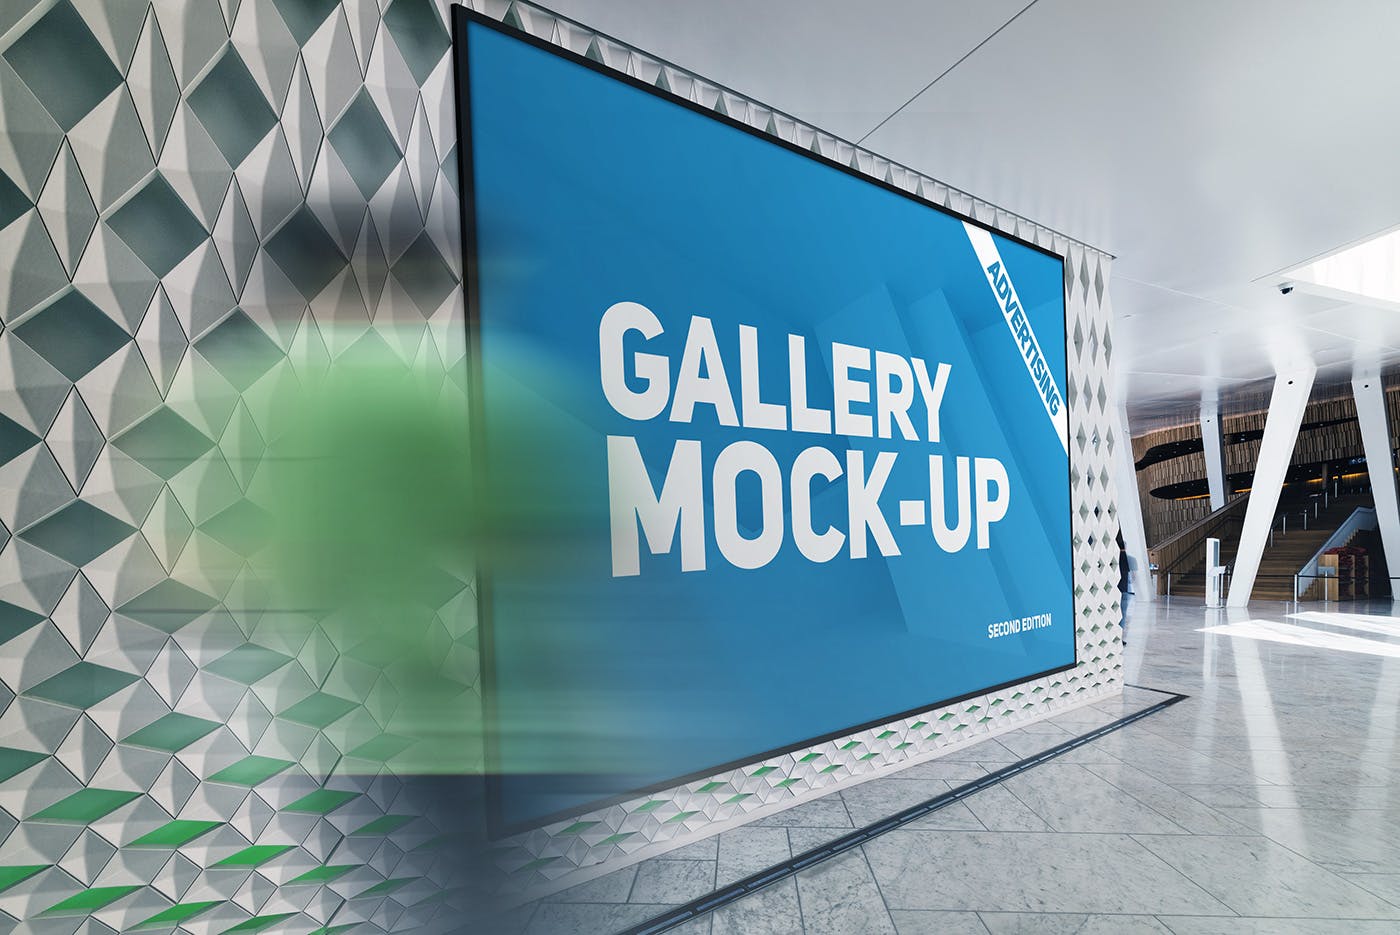 展厅画廊巨幅海报设计图样机第一素材精选模板v3 Gallery Poster Mockup v.3插图(5)